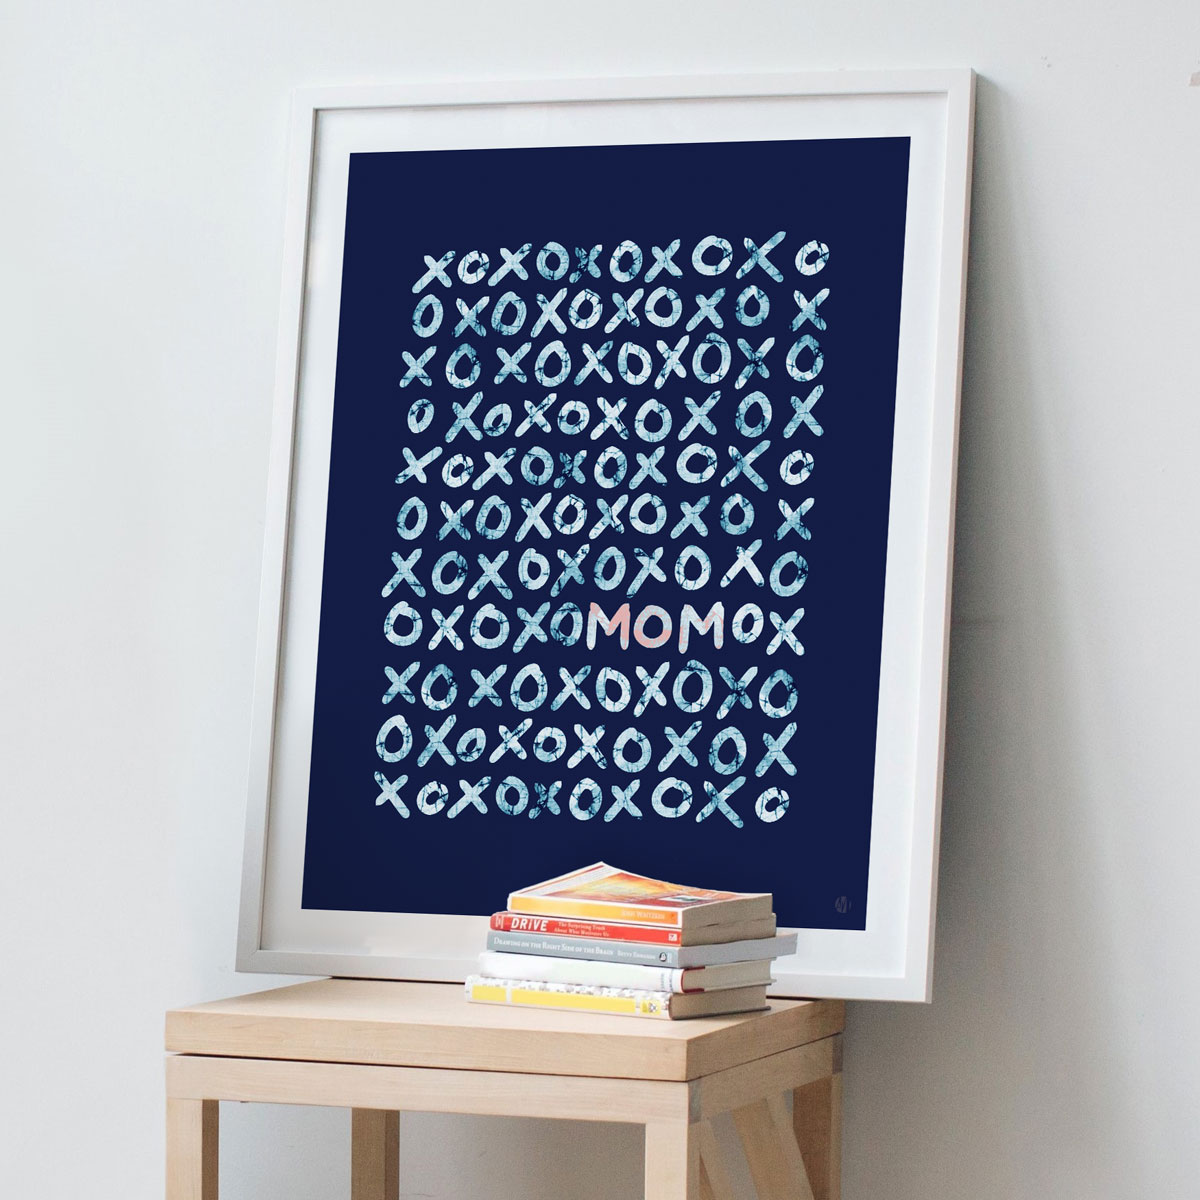 XOXO (love) MOM – Batik-inspired Graphic Print in Blue